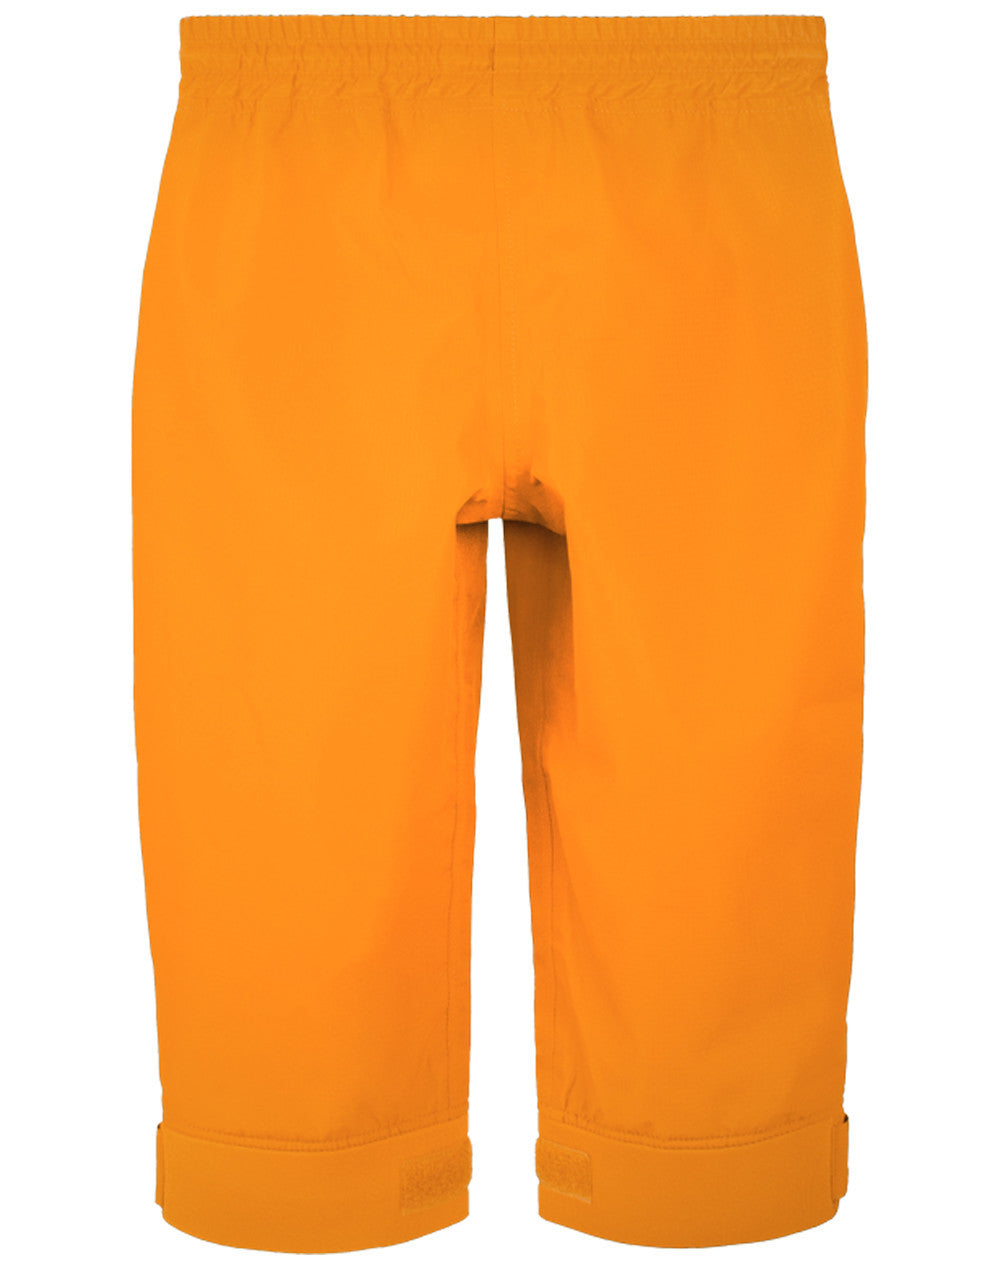 Oakiwear Kids Waterproof Rain Pants Boys Girls, Lava Orange